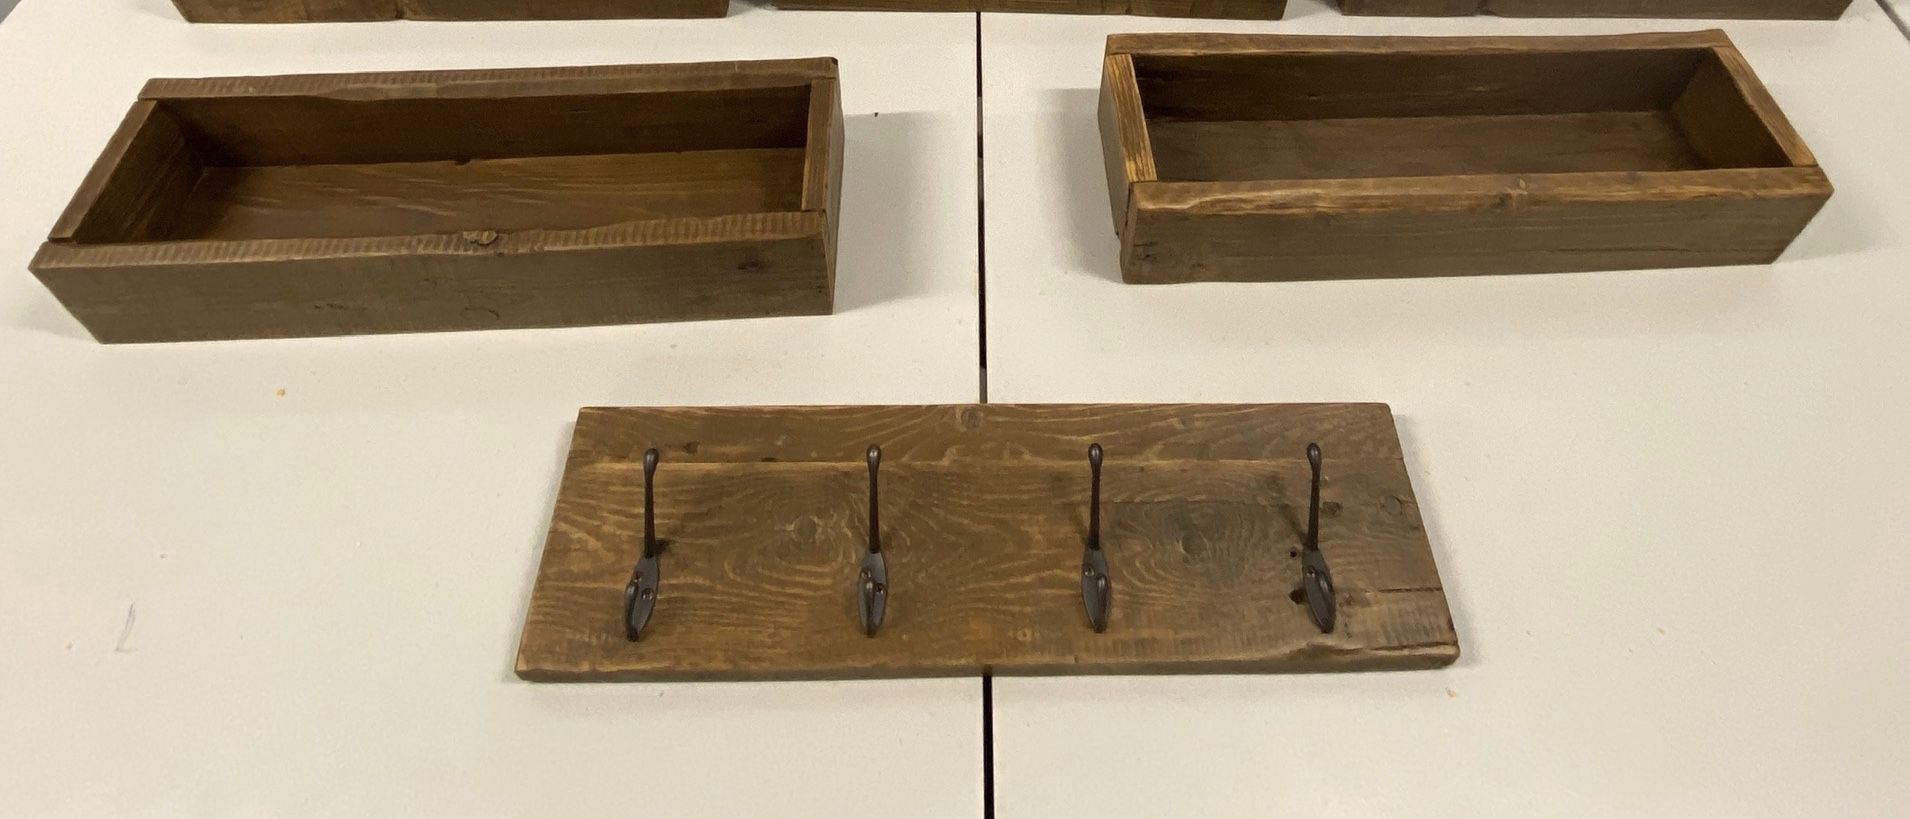 Reclaimed wood shelves & hooks